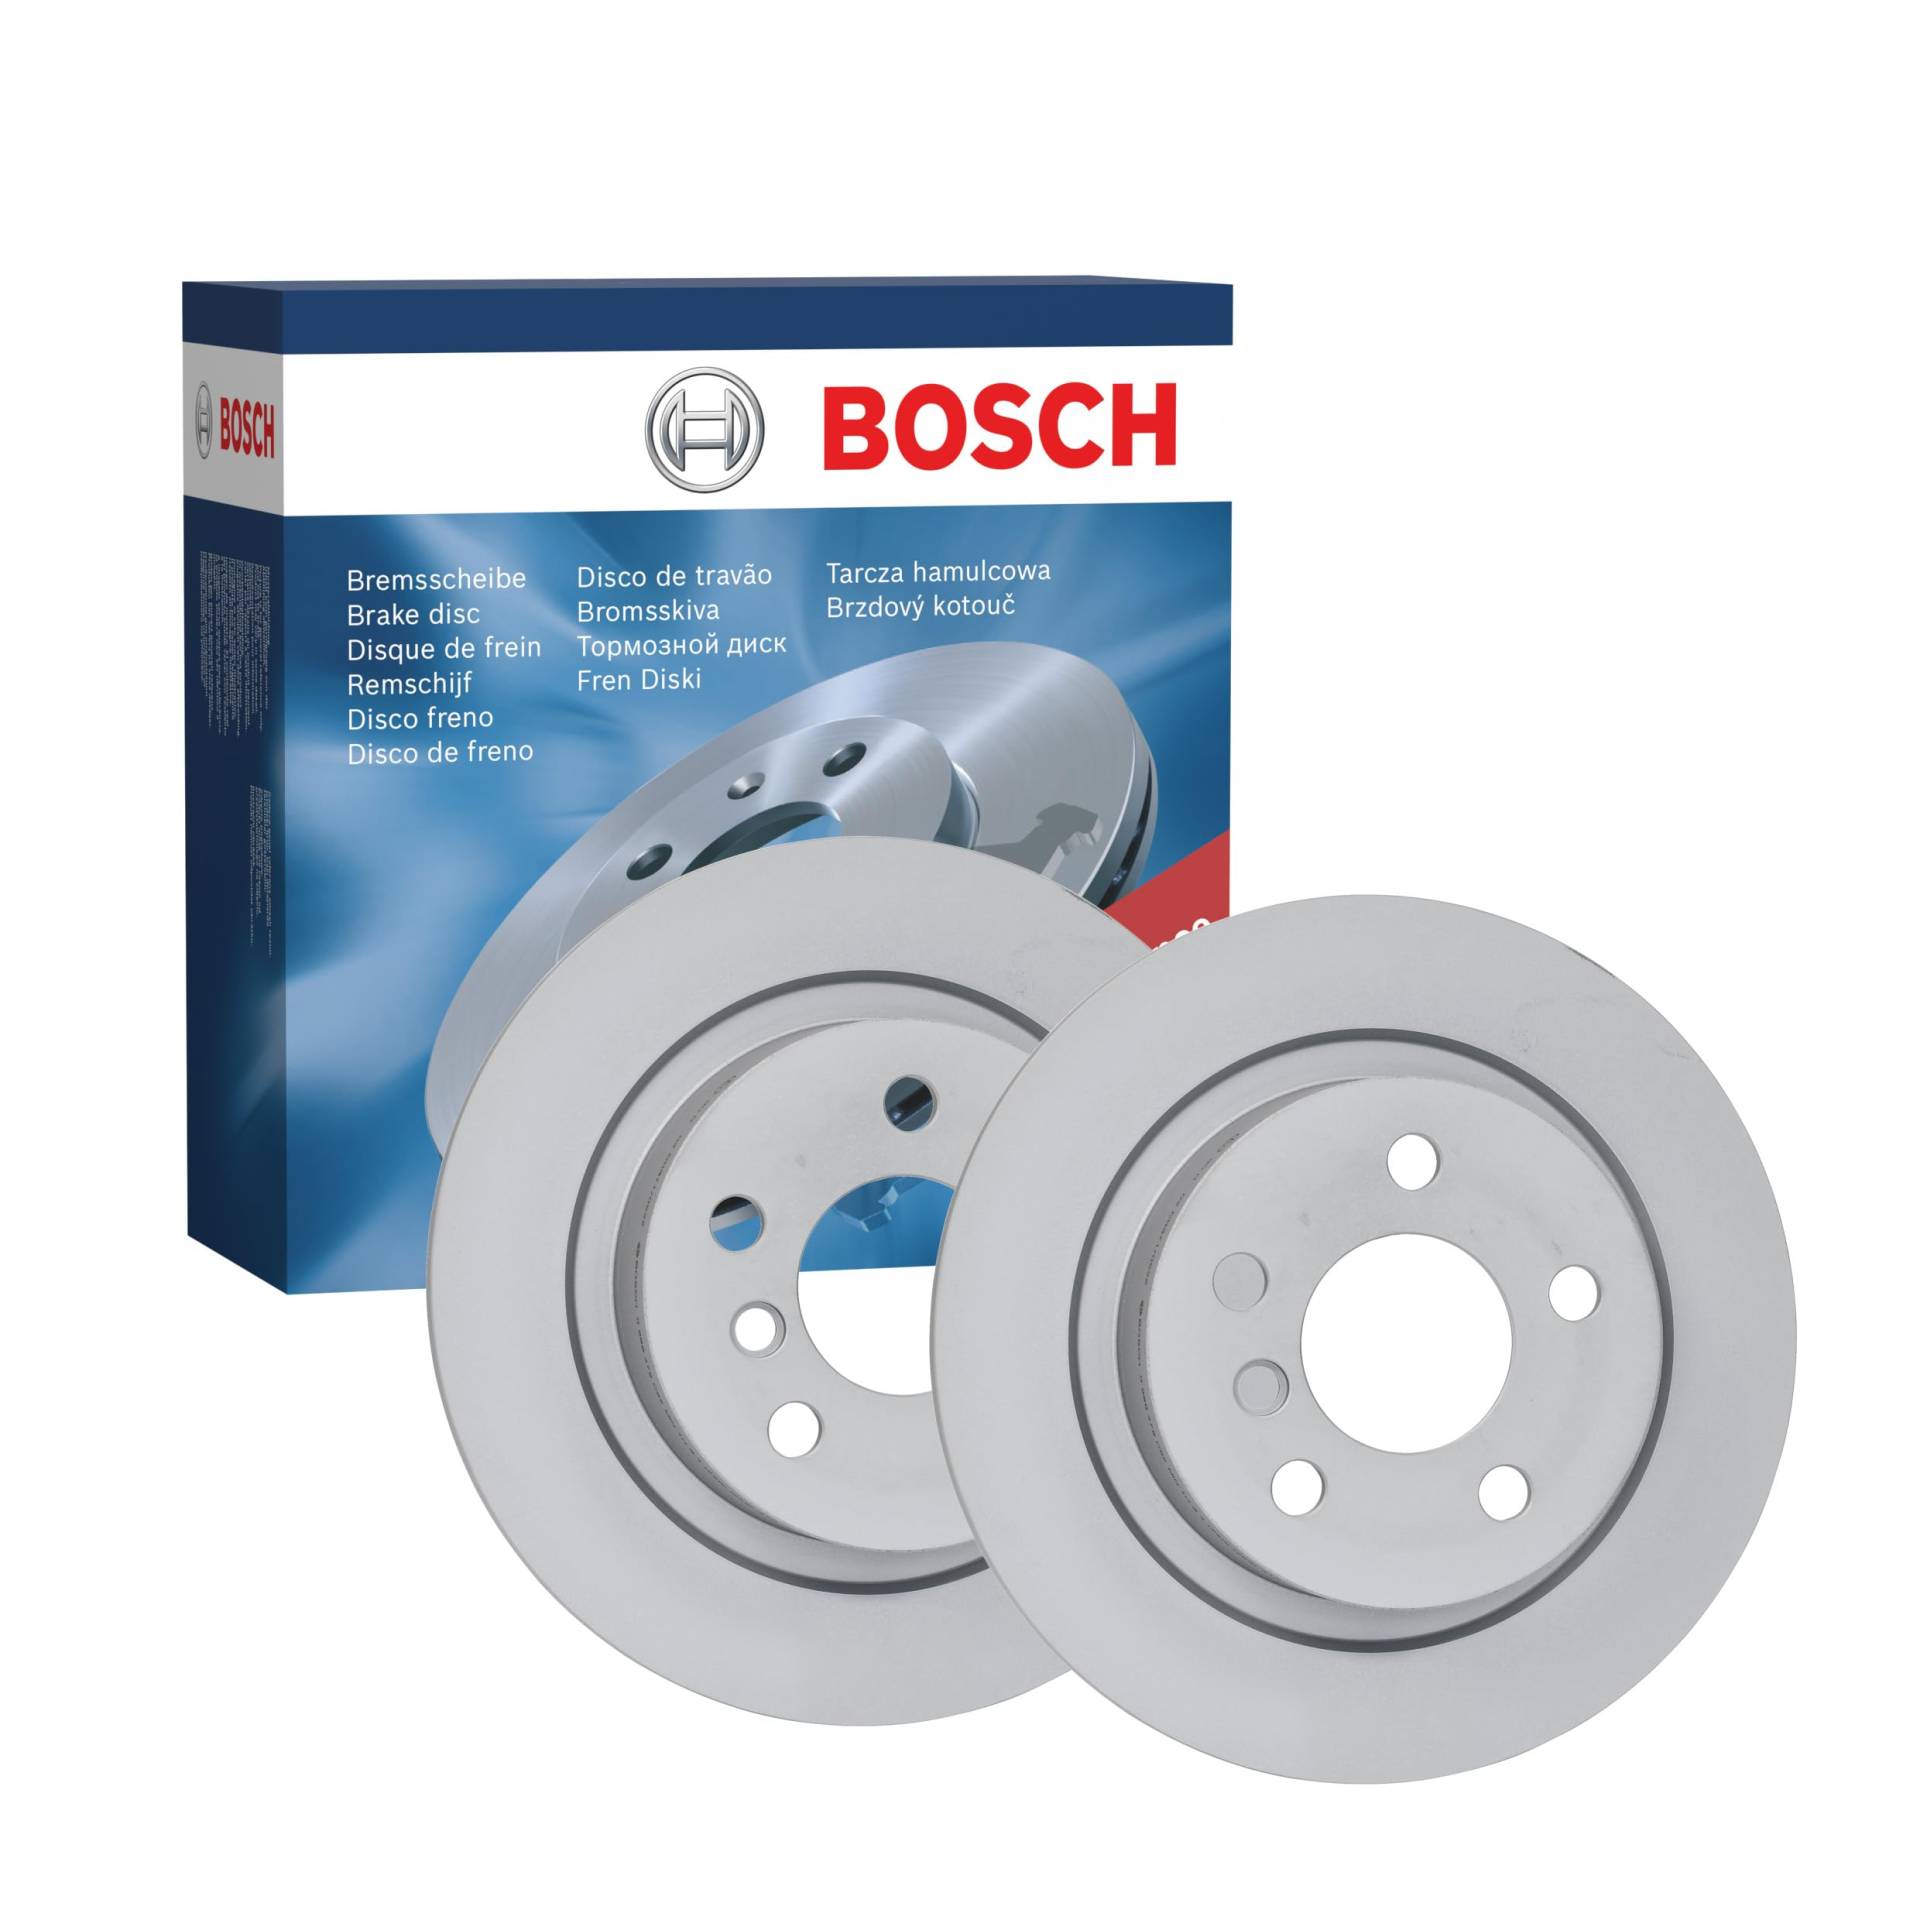 Bosch BD2413 Bremsscheiben - Hinterachse - ECE-R90 Zertifizierung - zwei Bremsscheiben pro Set von Bosch Automotive